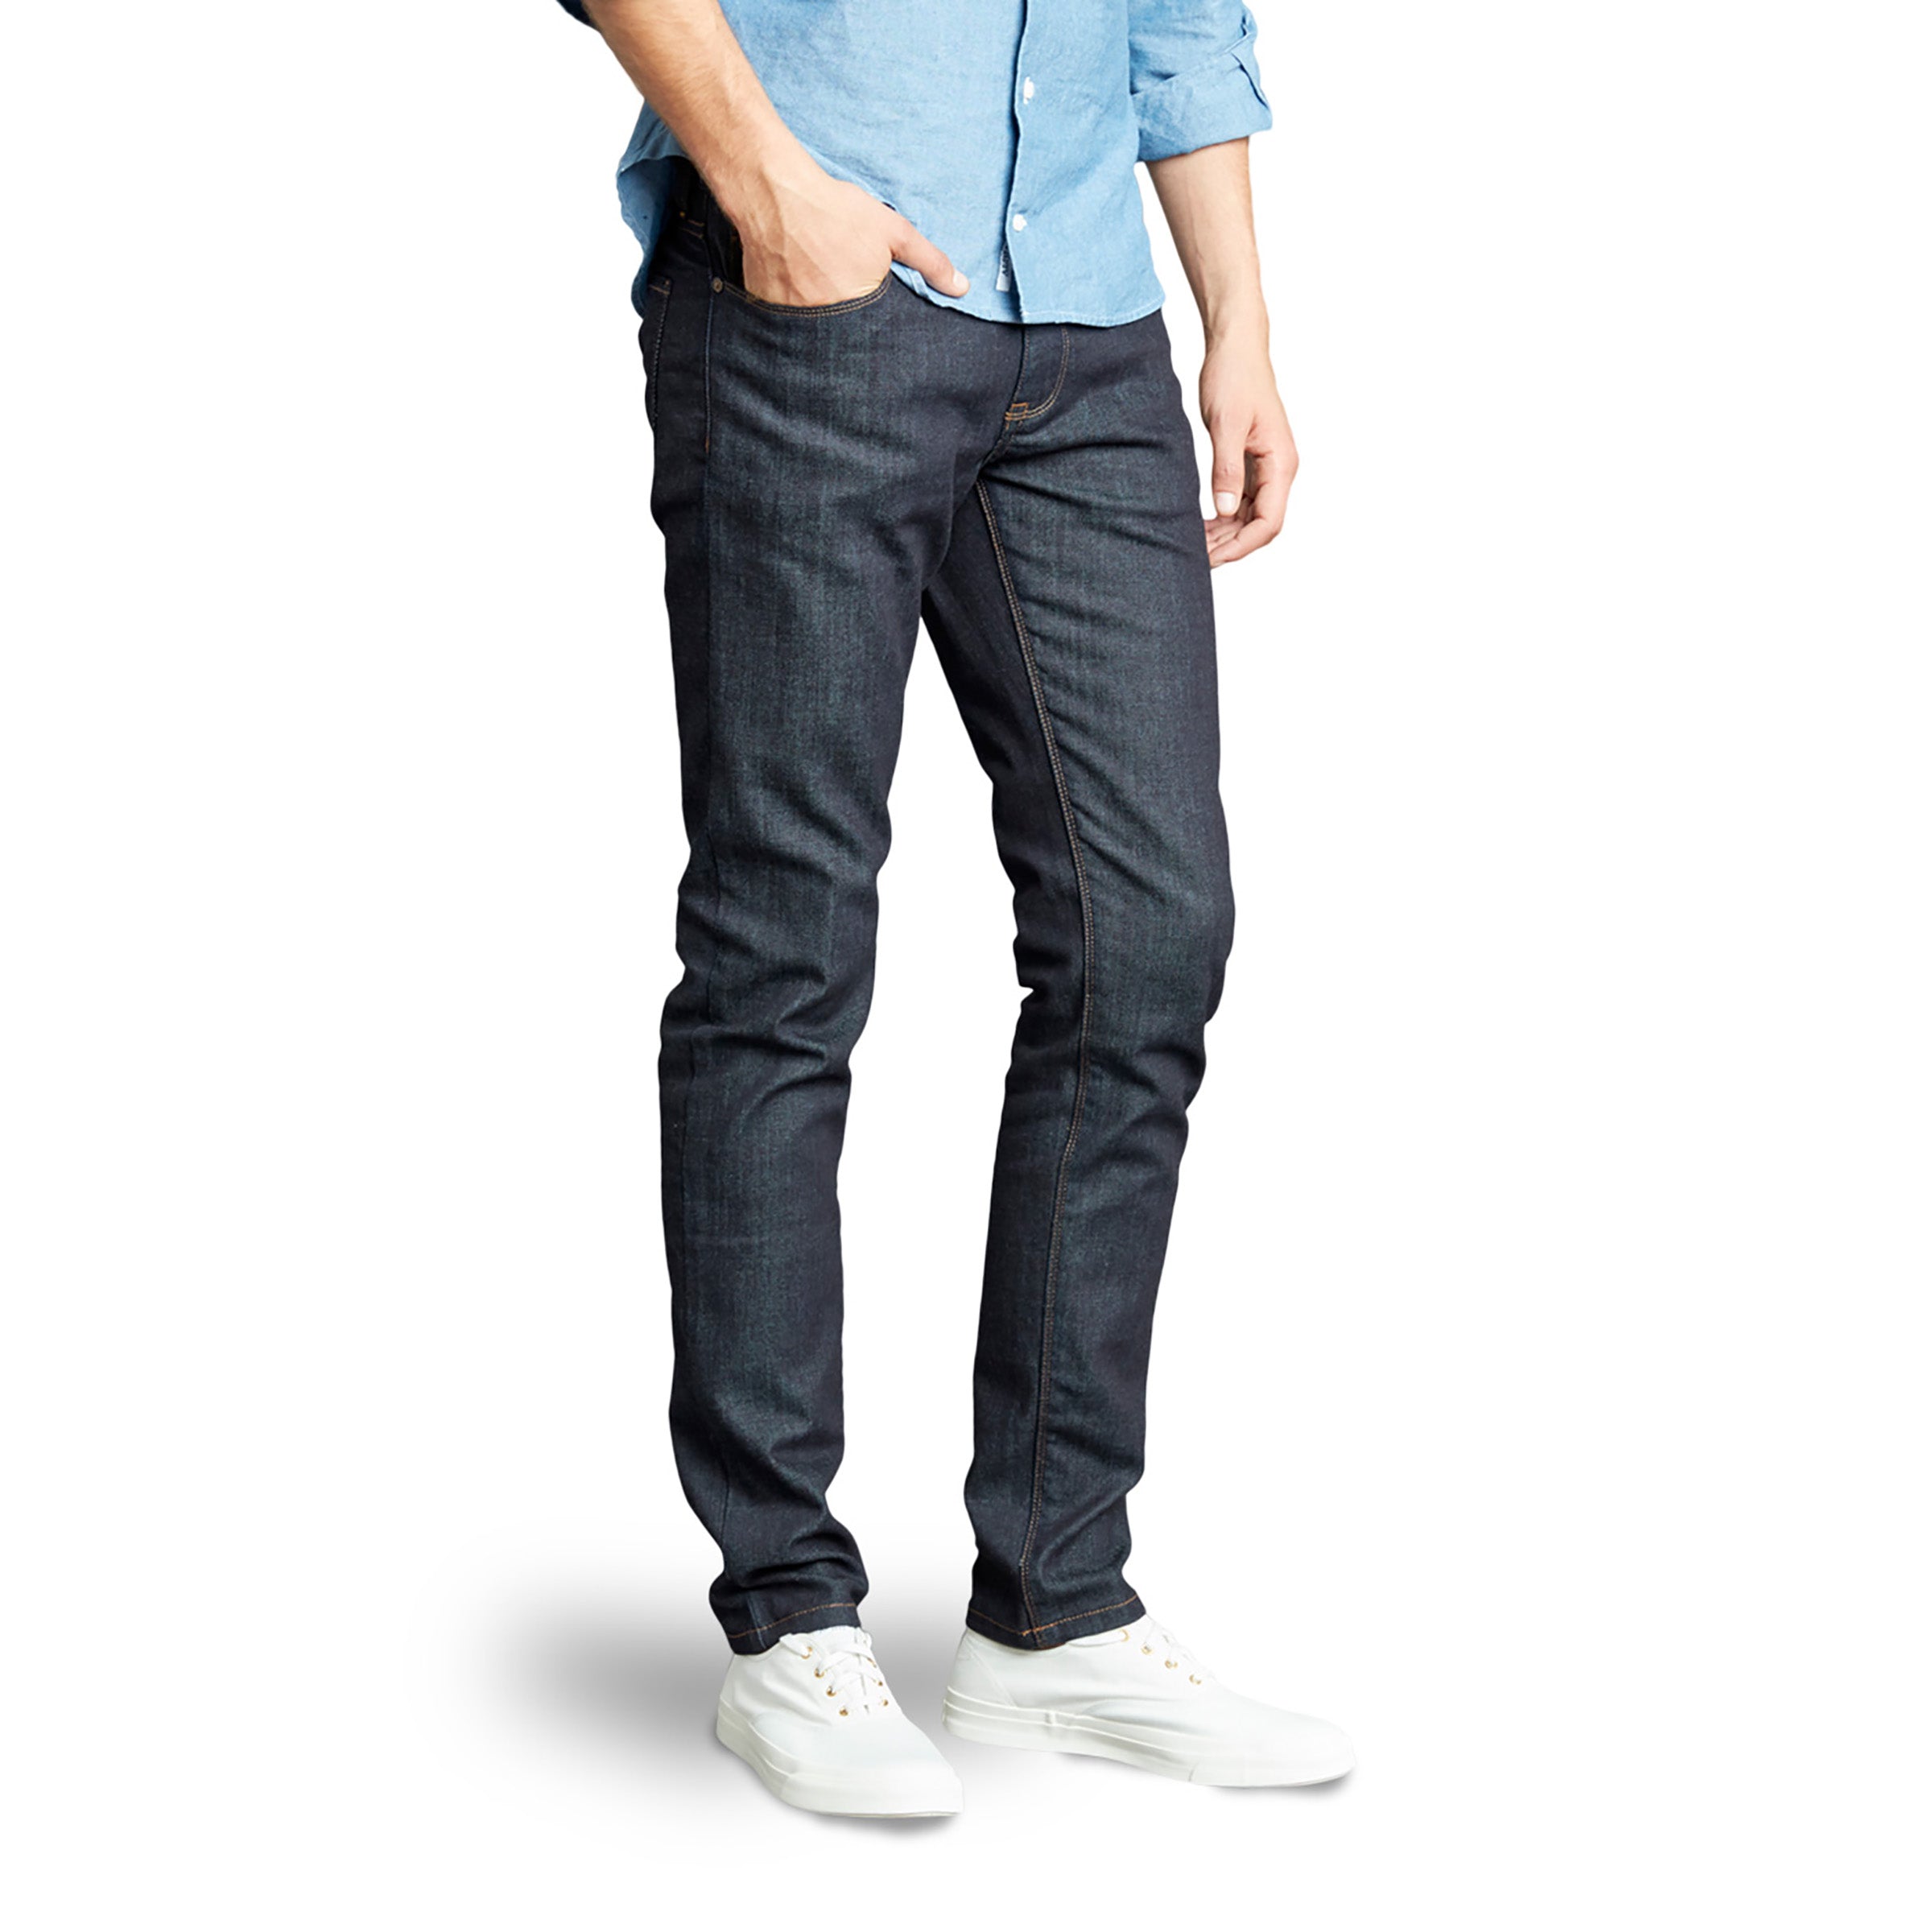 Men wearing Bleu Foncé Skinny Mosco Jeans